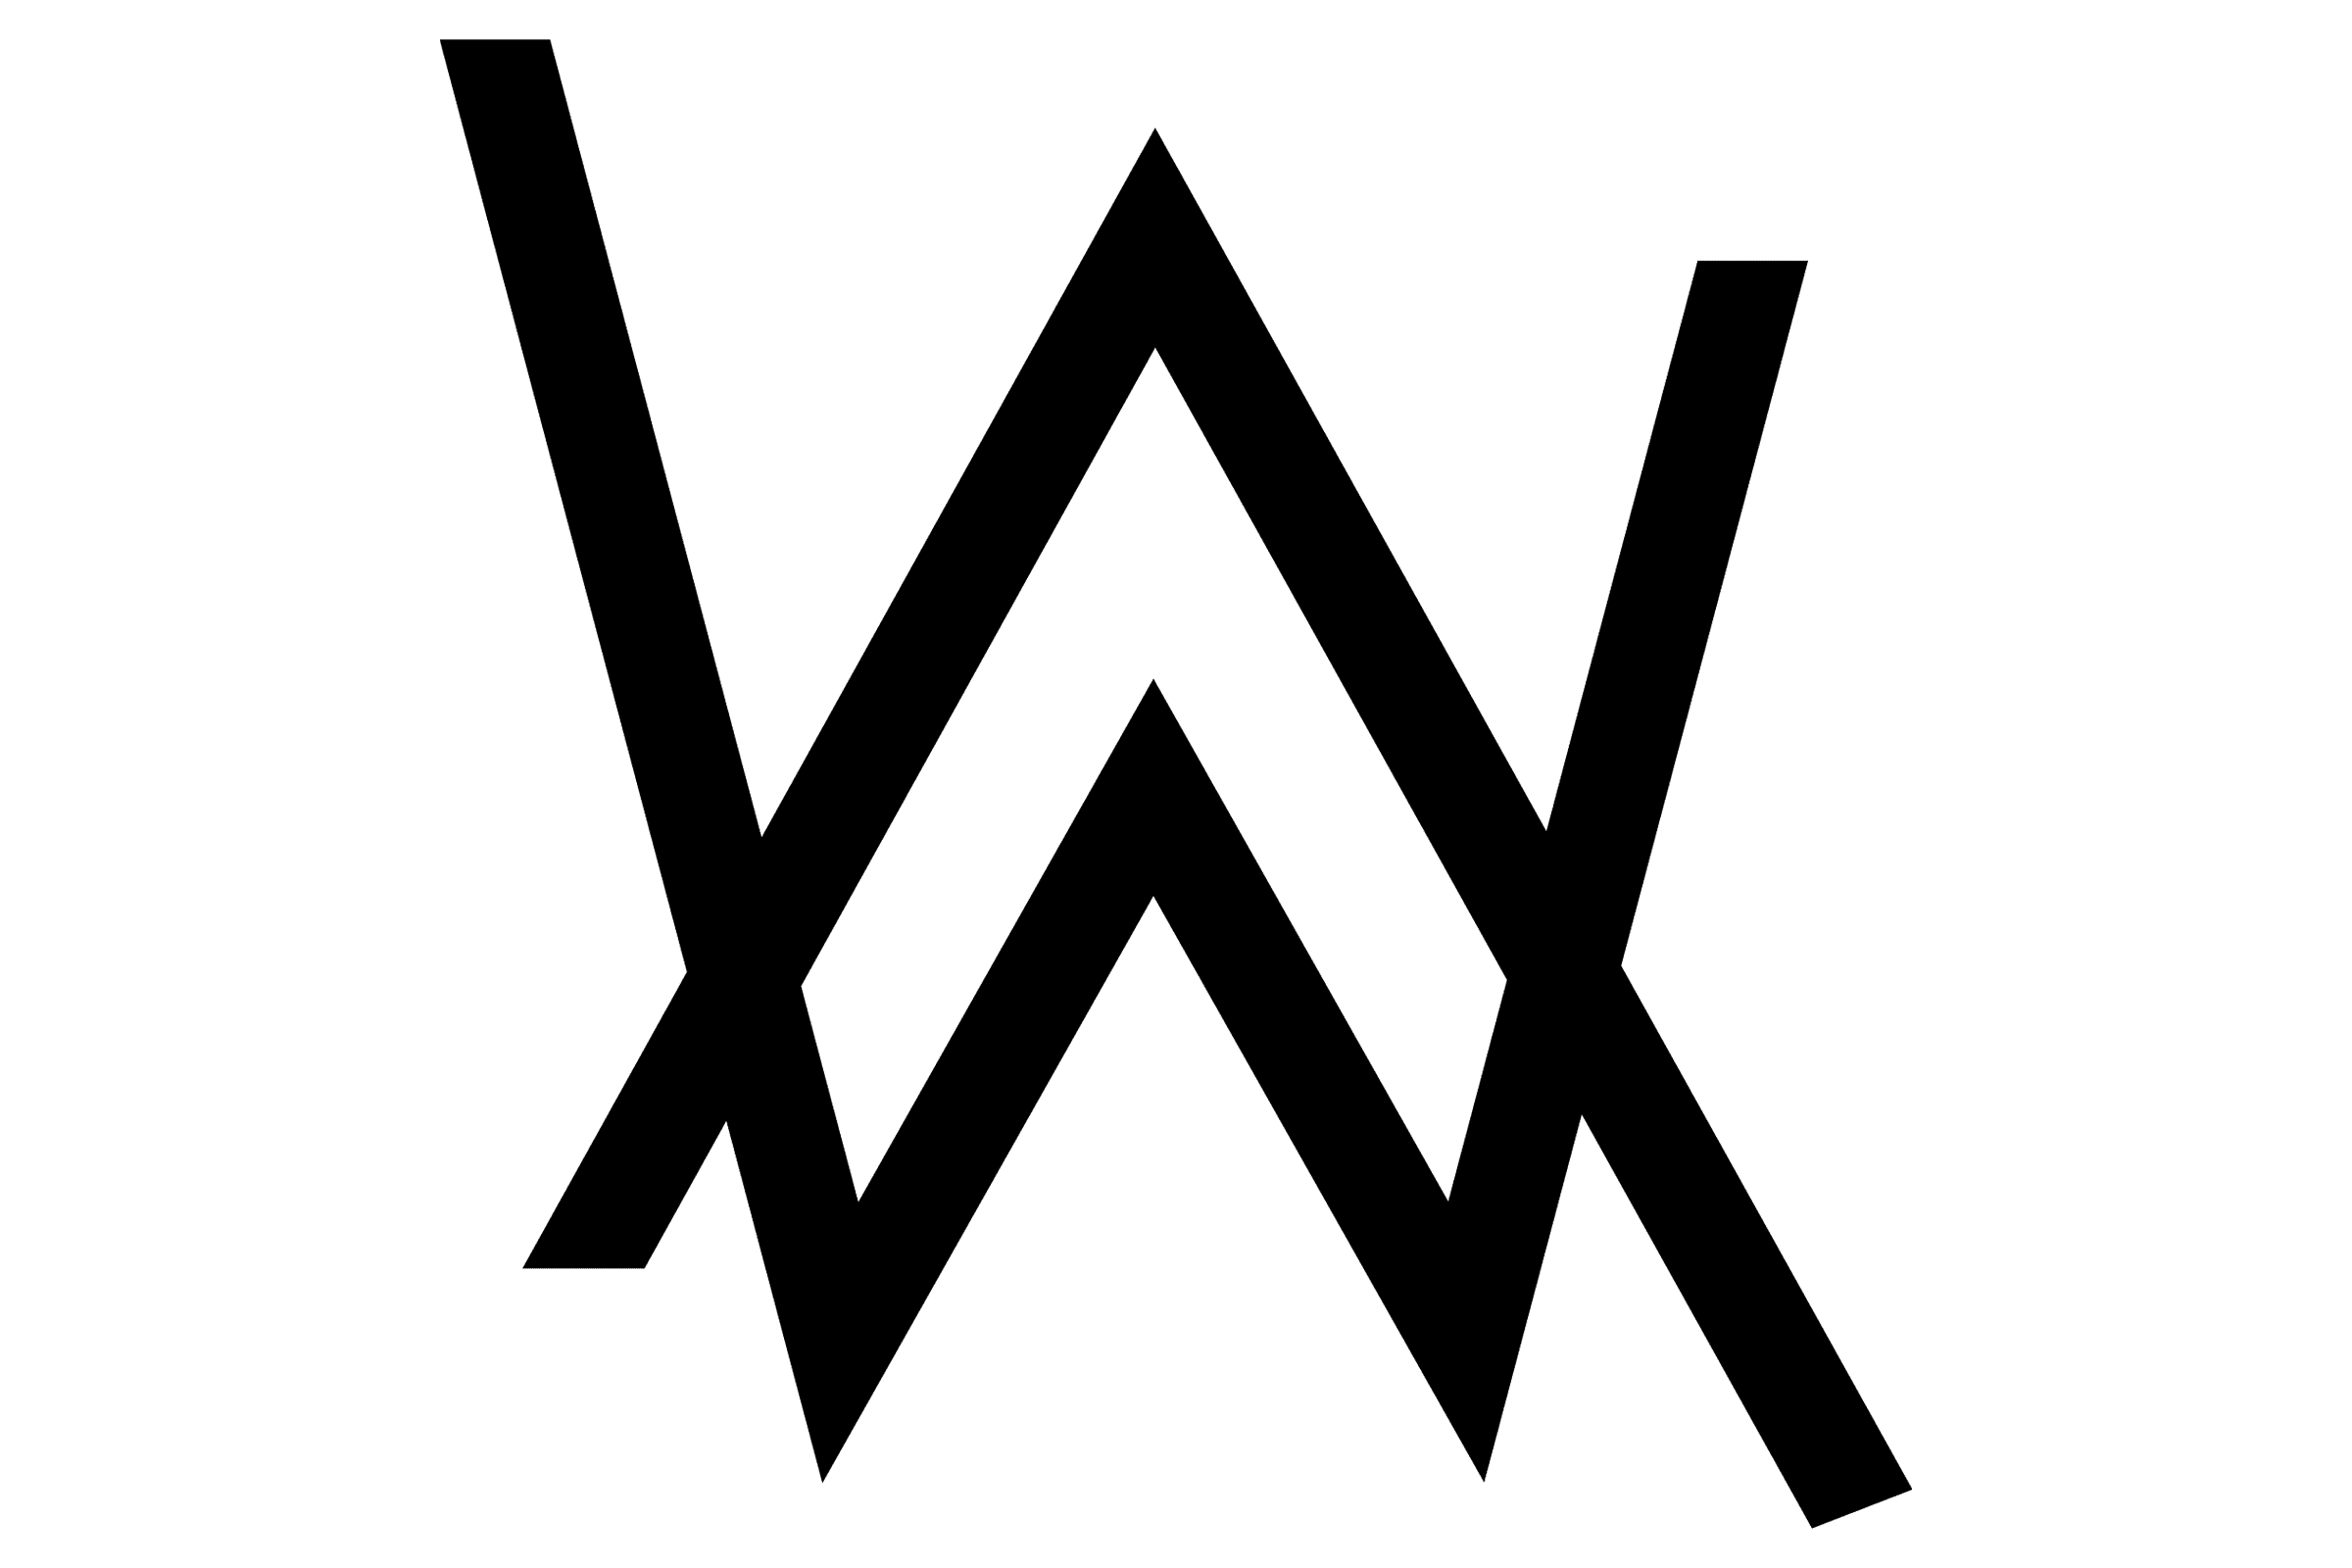 Vriendelijkheid trimmen zoet Alan Walker logo and symbol, meaning, history, PNG